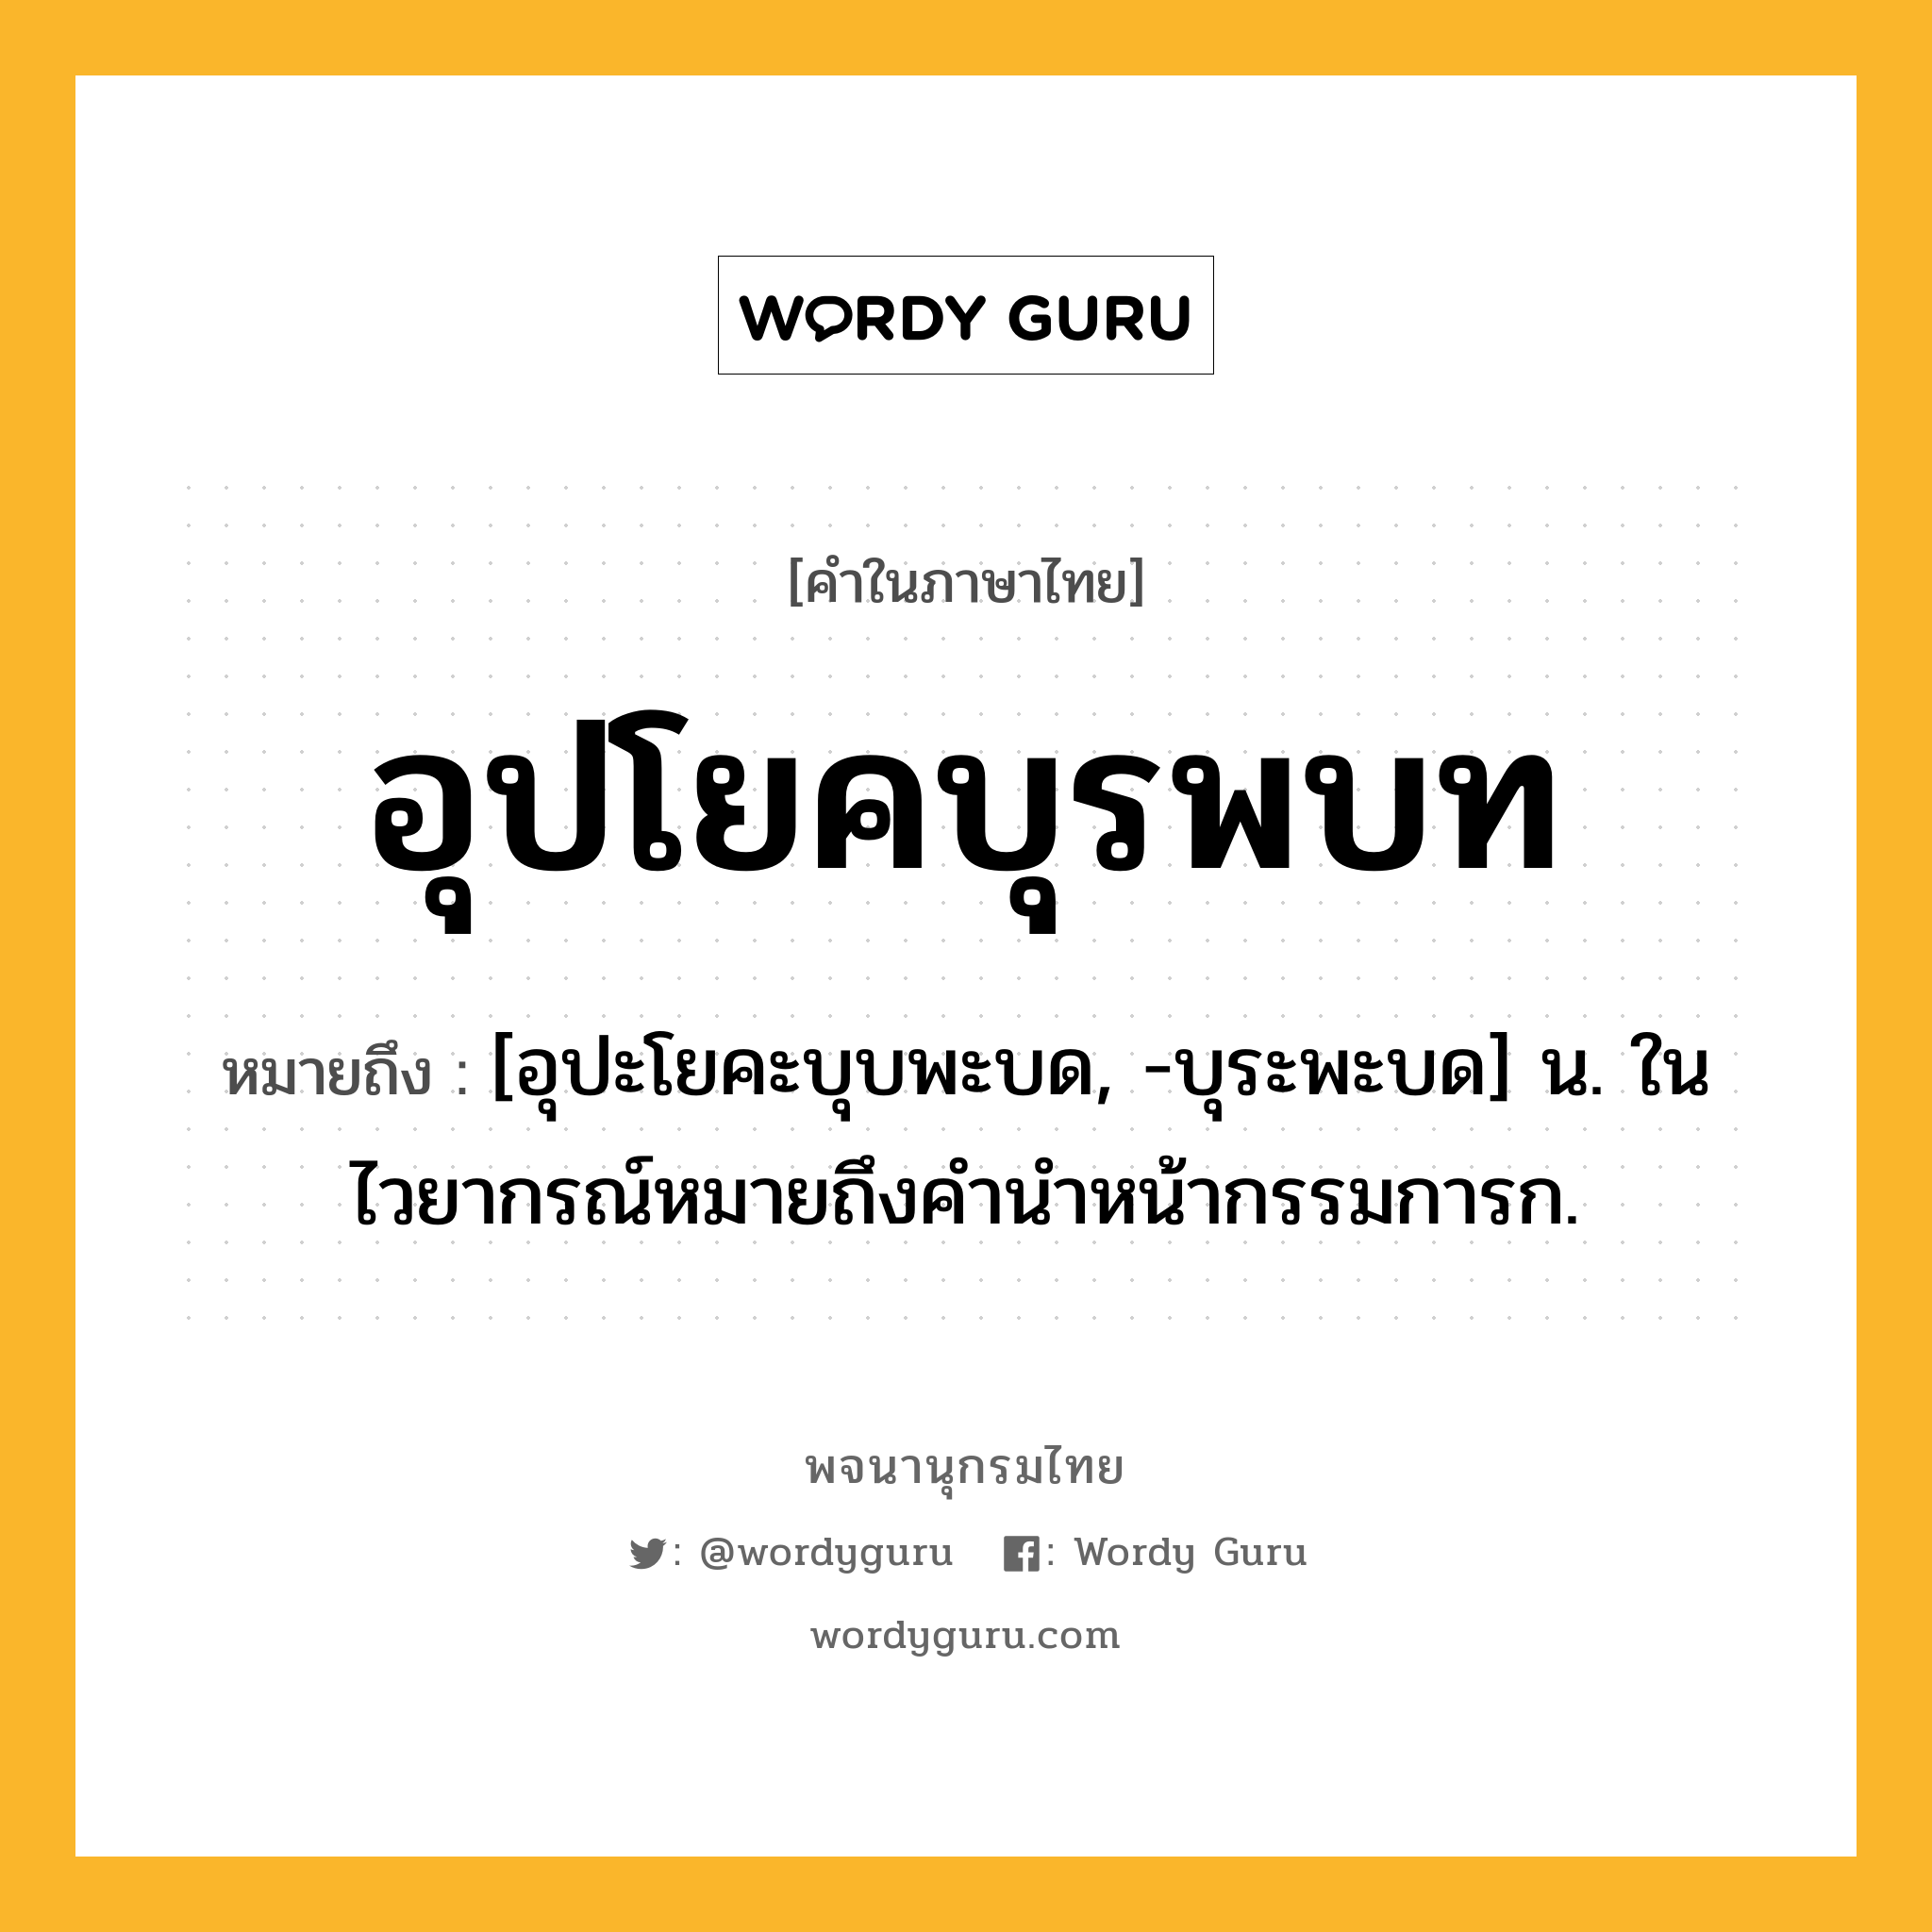 อุปโยคบุรพบท ความหมาย หมายถึงอะไร?, คำในภาษาไทย อุปโยคบุรพบท หมายถึง [อุปะโยคะบุบพะบด, -บุระพะบด] น. ในไวยากรณ์หมายถึงคํานําหน้ากรรมการก.